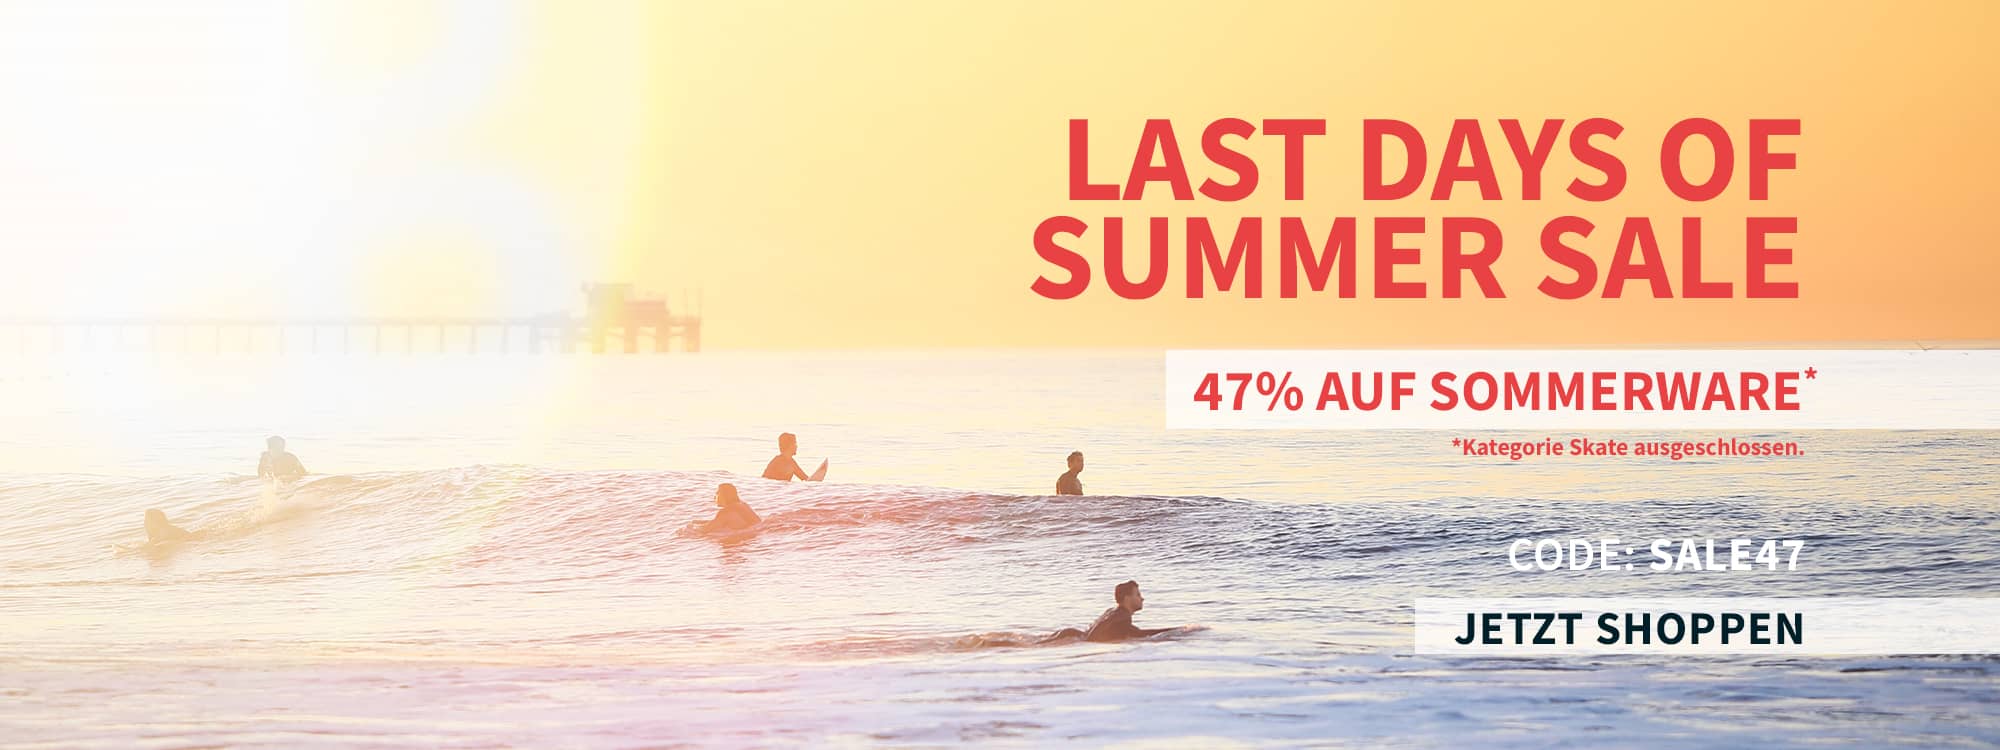 Last Days of Summer-Sale Banner für Desktop mit Surfern im Hintergrund